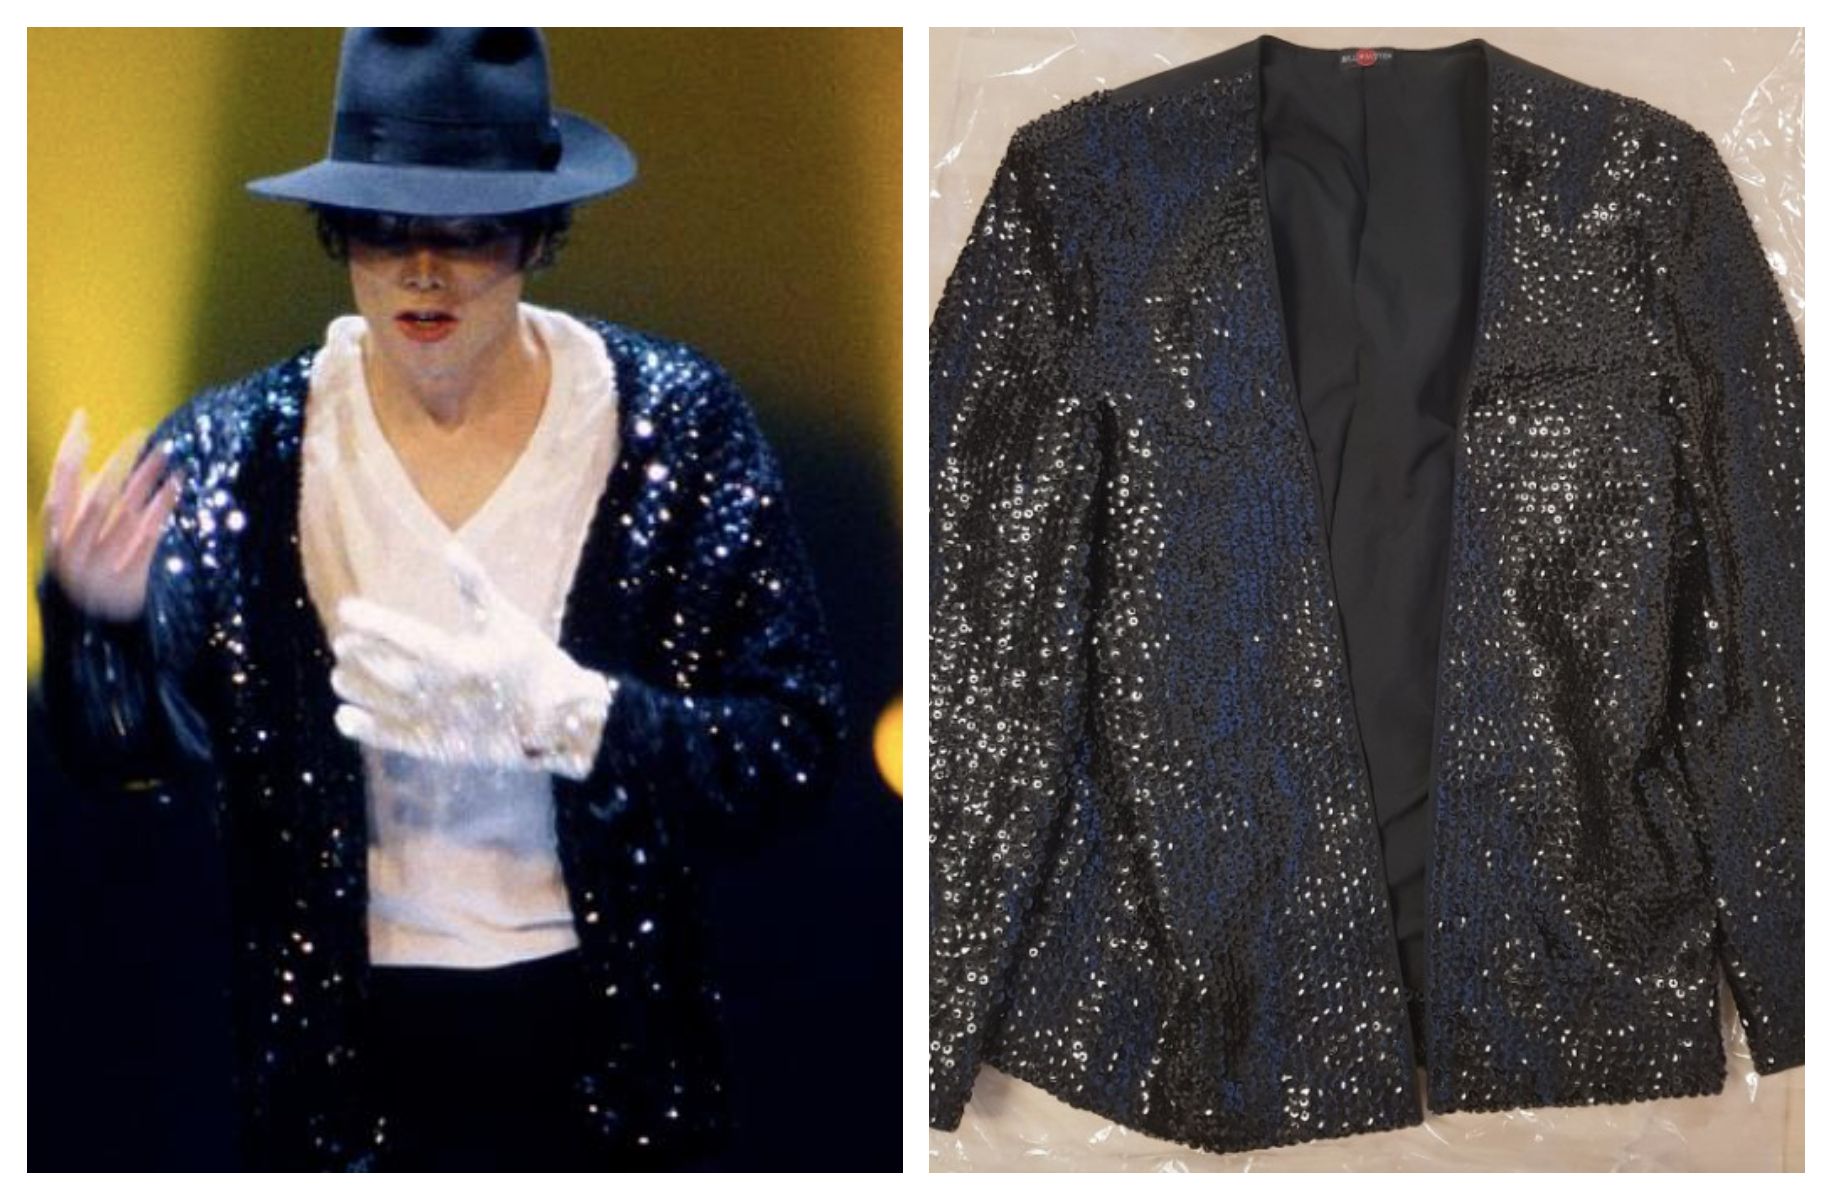 Michael Jackson durante u gira en 1992 y la chaqueta original del cantante a la venta. 